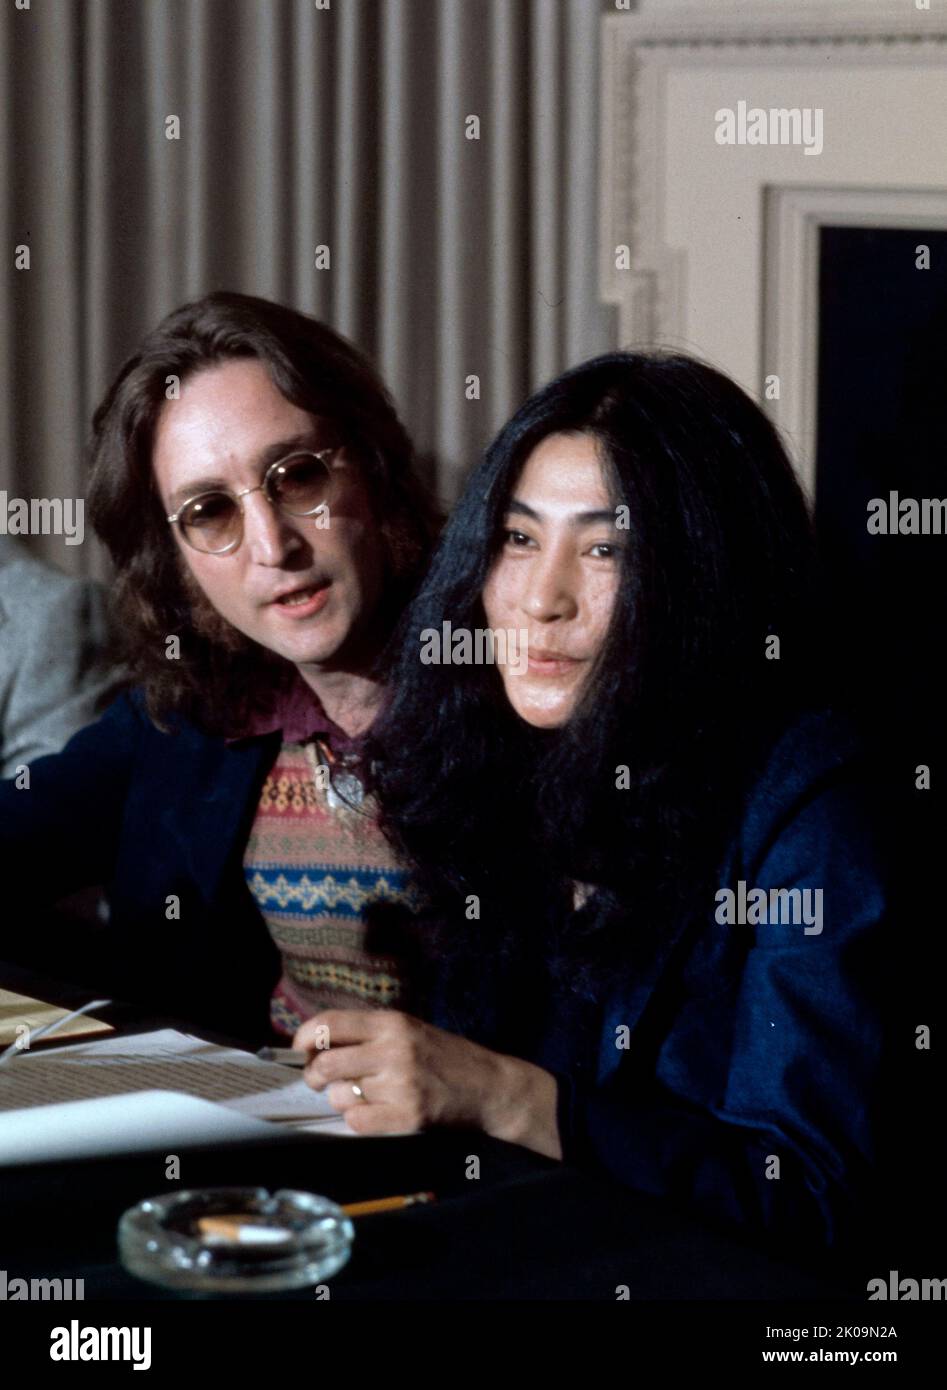 John Lennon et Yoko Ono lors d'une conférence de presse. Deux ans avant la dissolution des Beatles, Lennon et Ono ont commencé des manifestations publiques contre la guerre du Vietnam. Ils se sont mariés à Gibraltar le 20 mars 1969 et ont passé leur lune de miel au Hilton Amsterdam, faisant campagne avec un Bed-in pour la paix d'une semaine. Banque D'Images